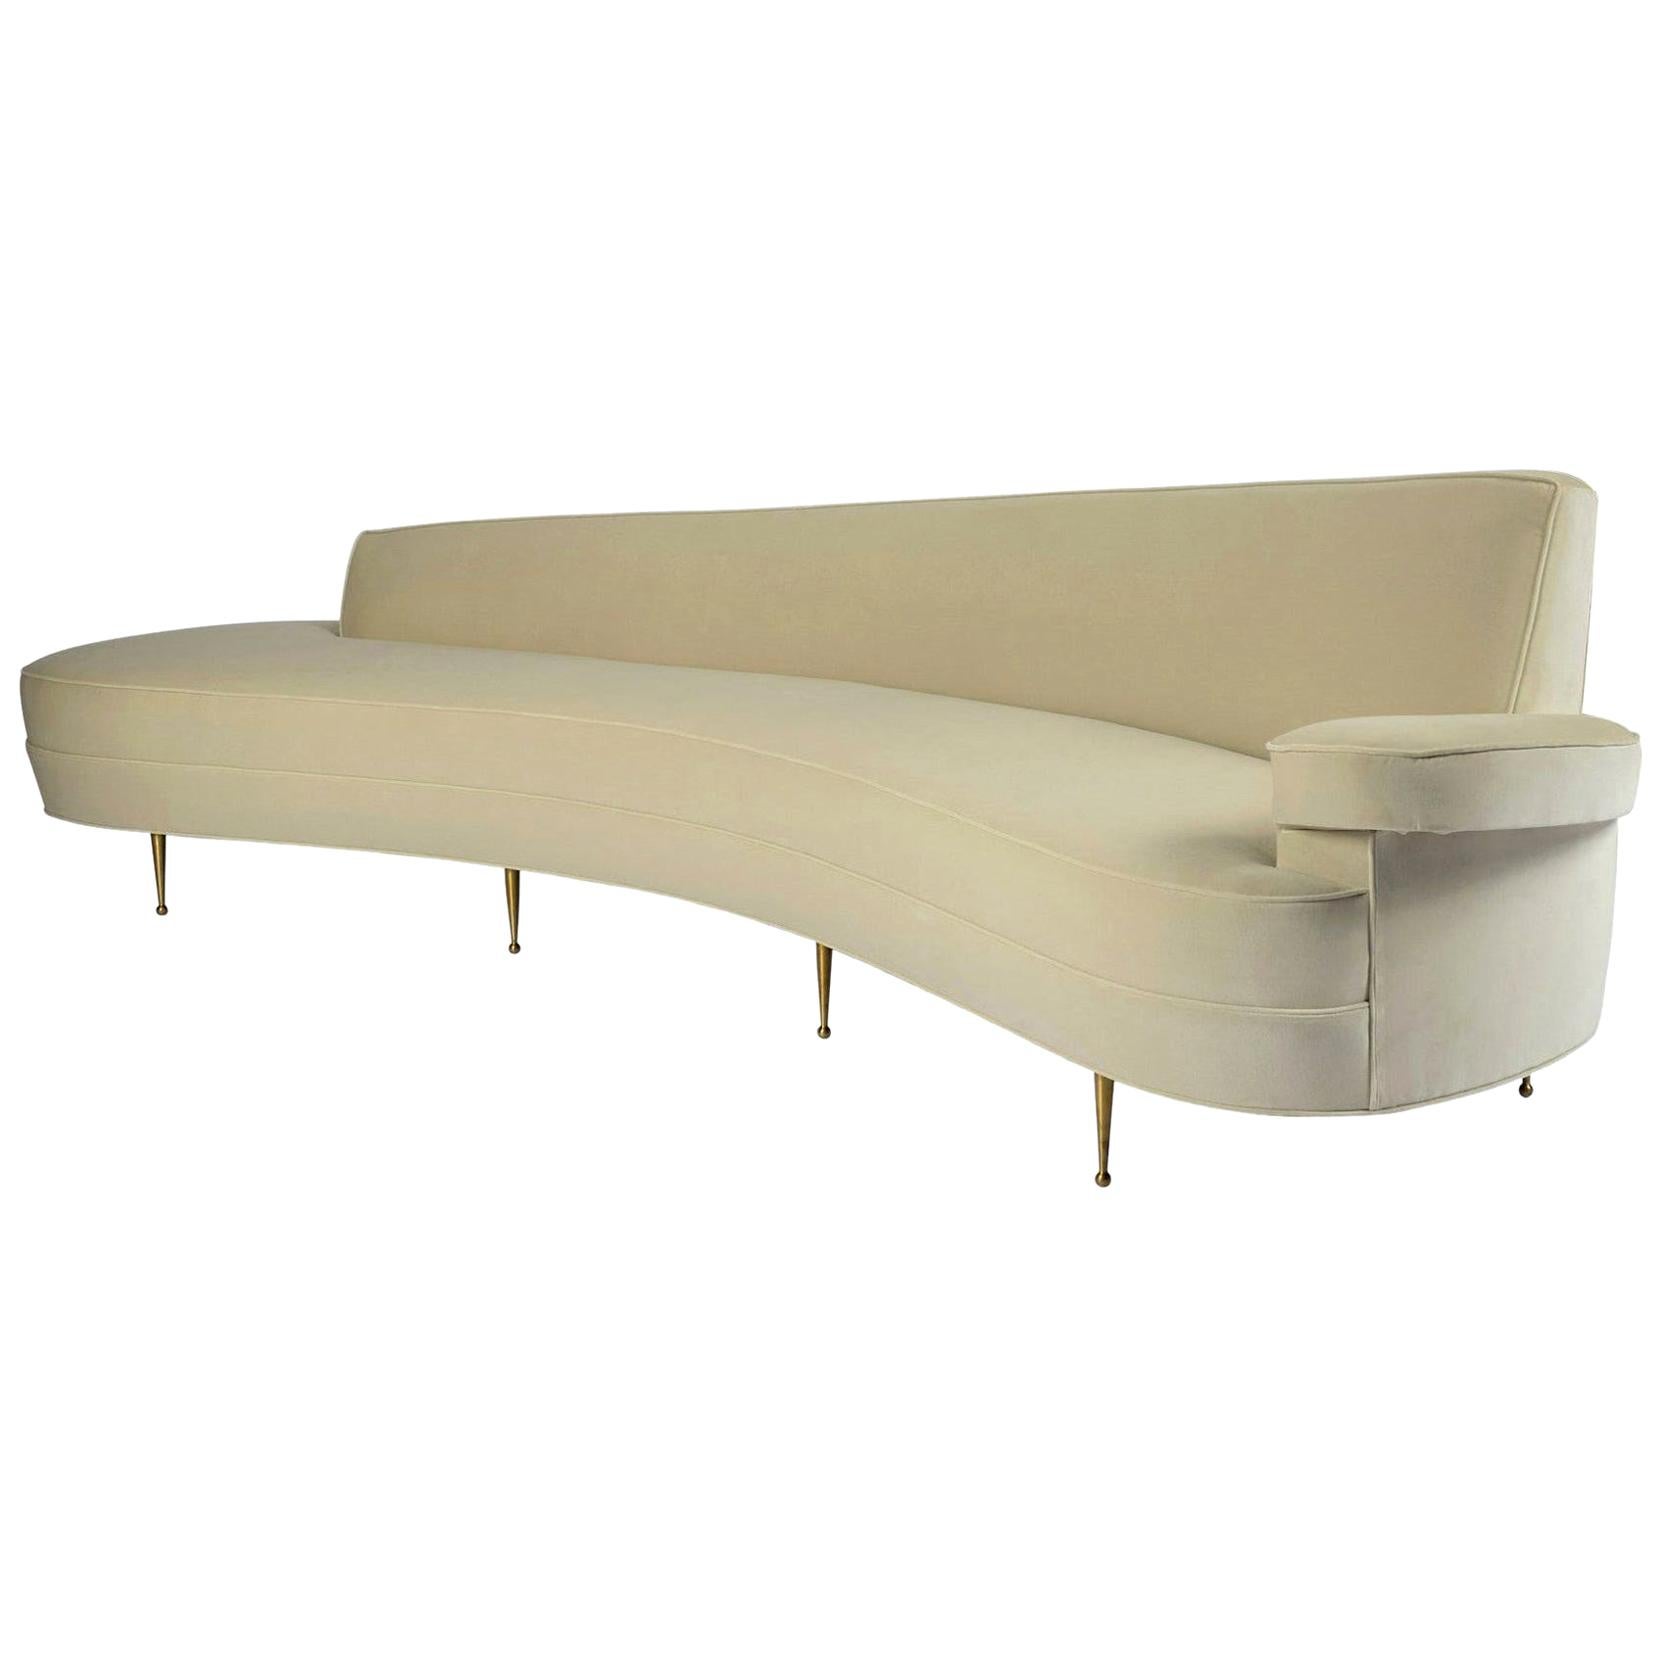 Asymmetrical Curve Back Italian Style Sofa, Right Arm